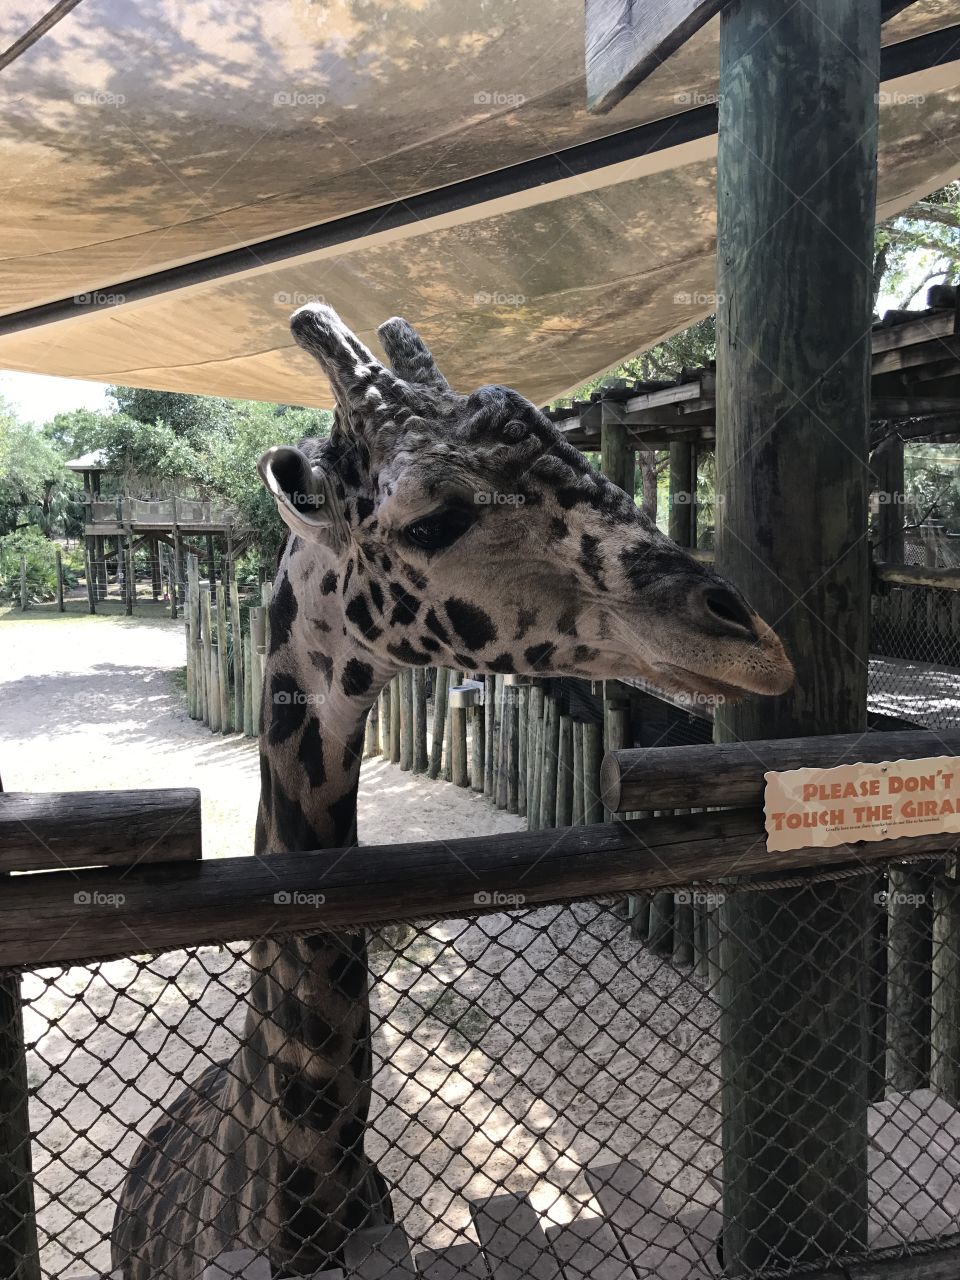 Giraffe at Brevard Zoo Rafeke 